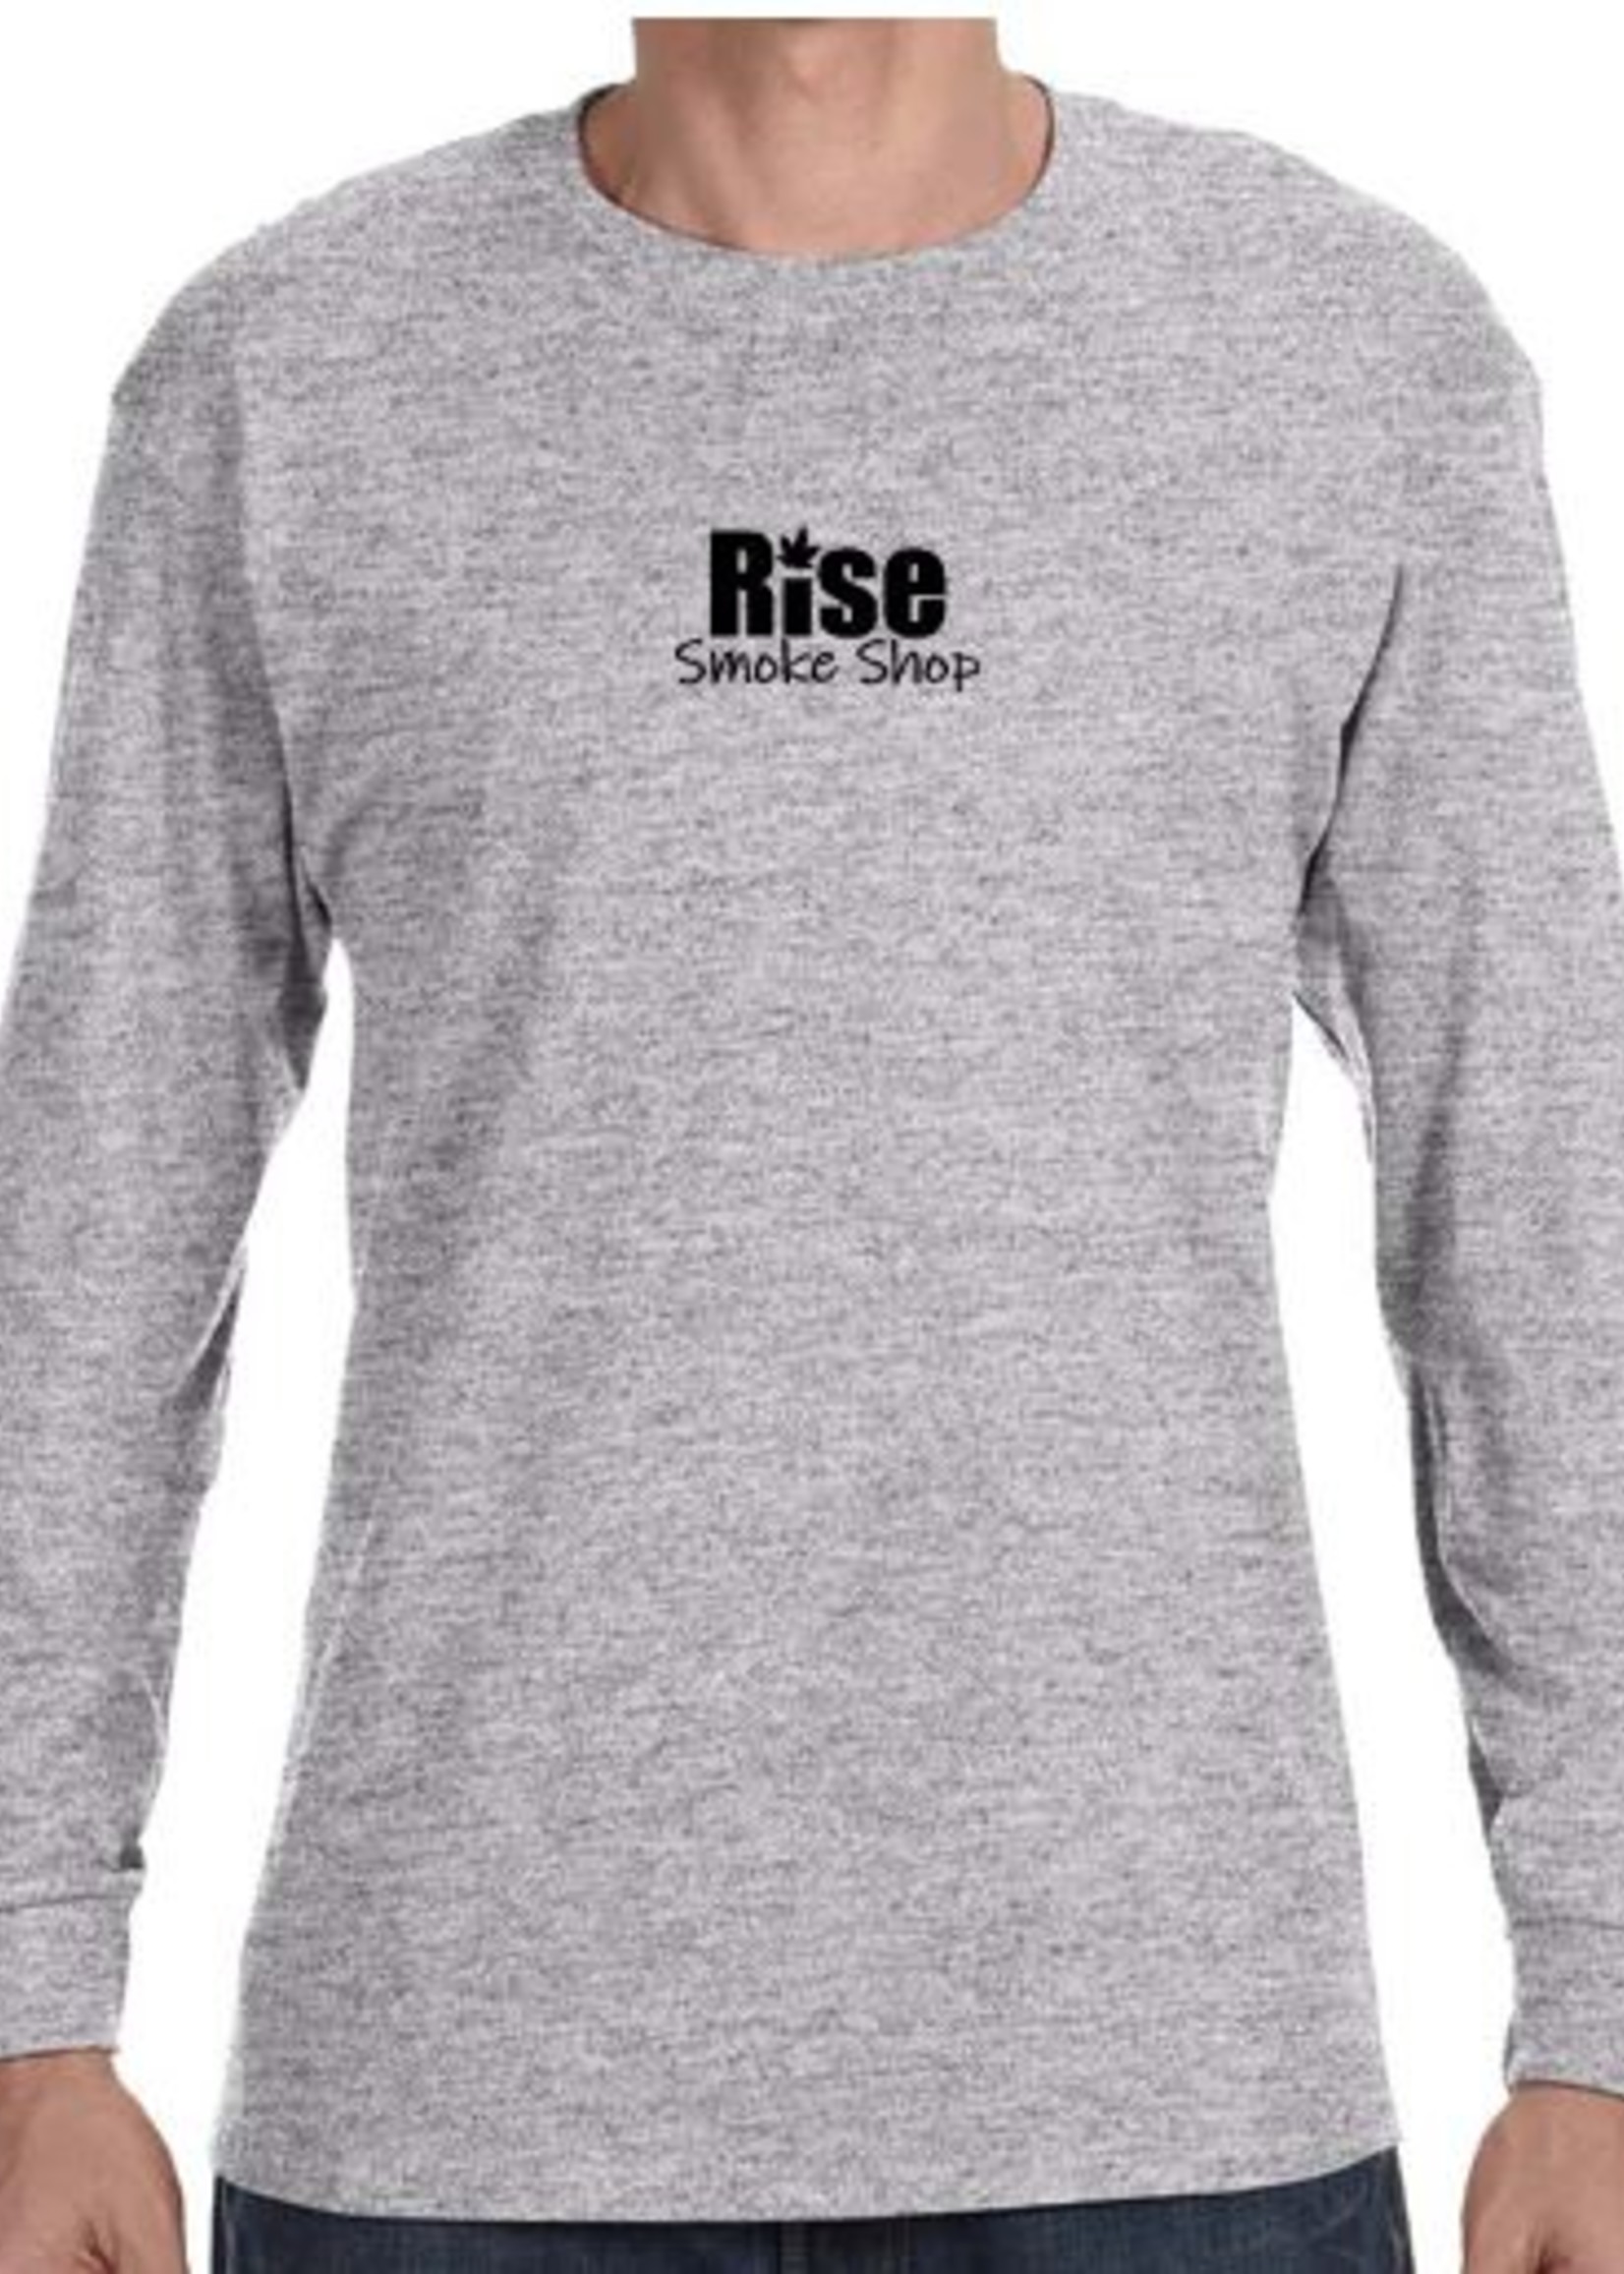 Rise Logo Long Sleeve Shirt - Medium